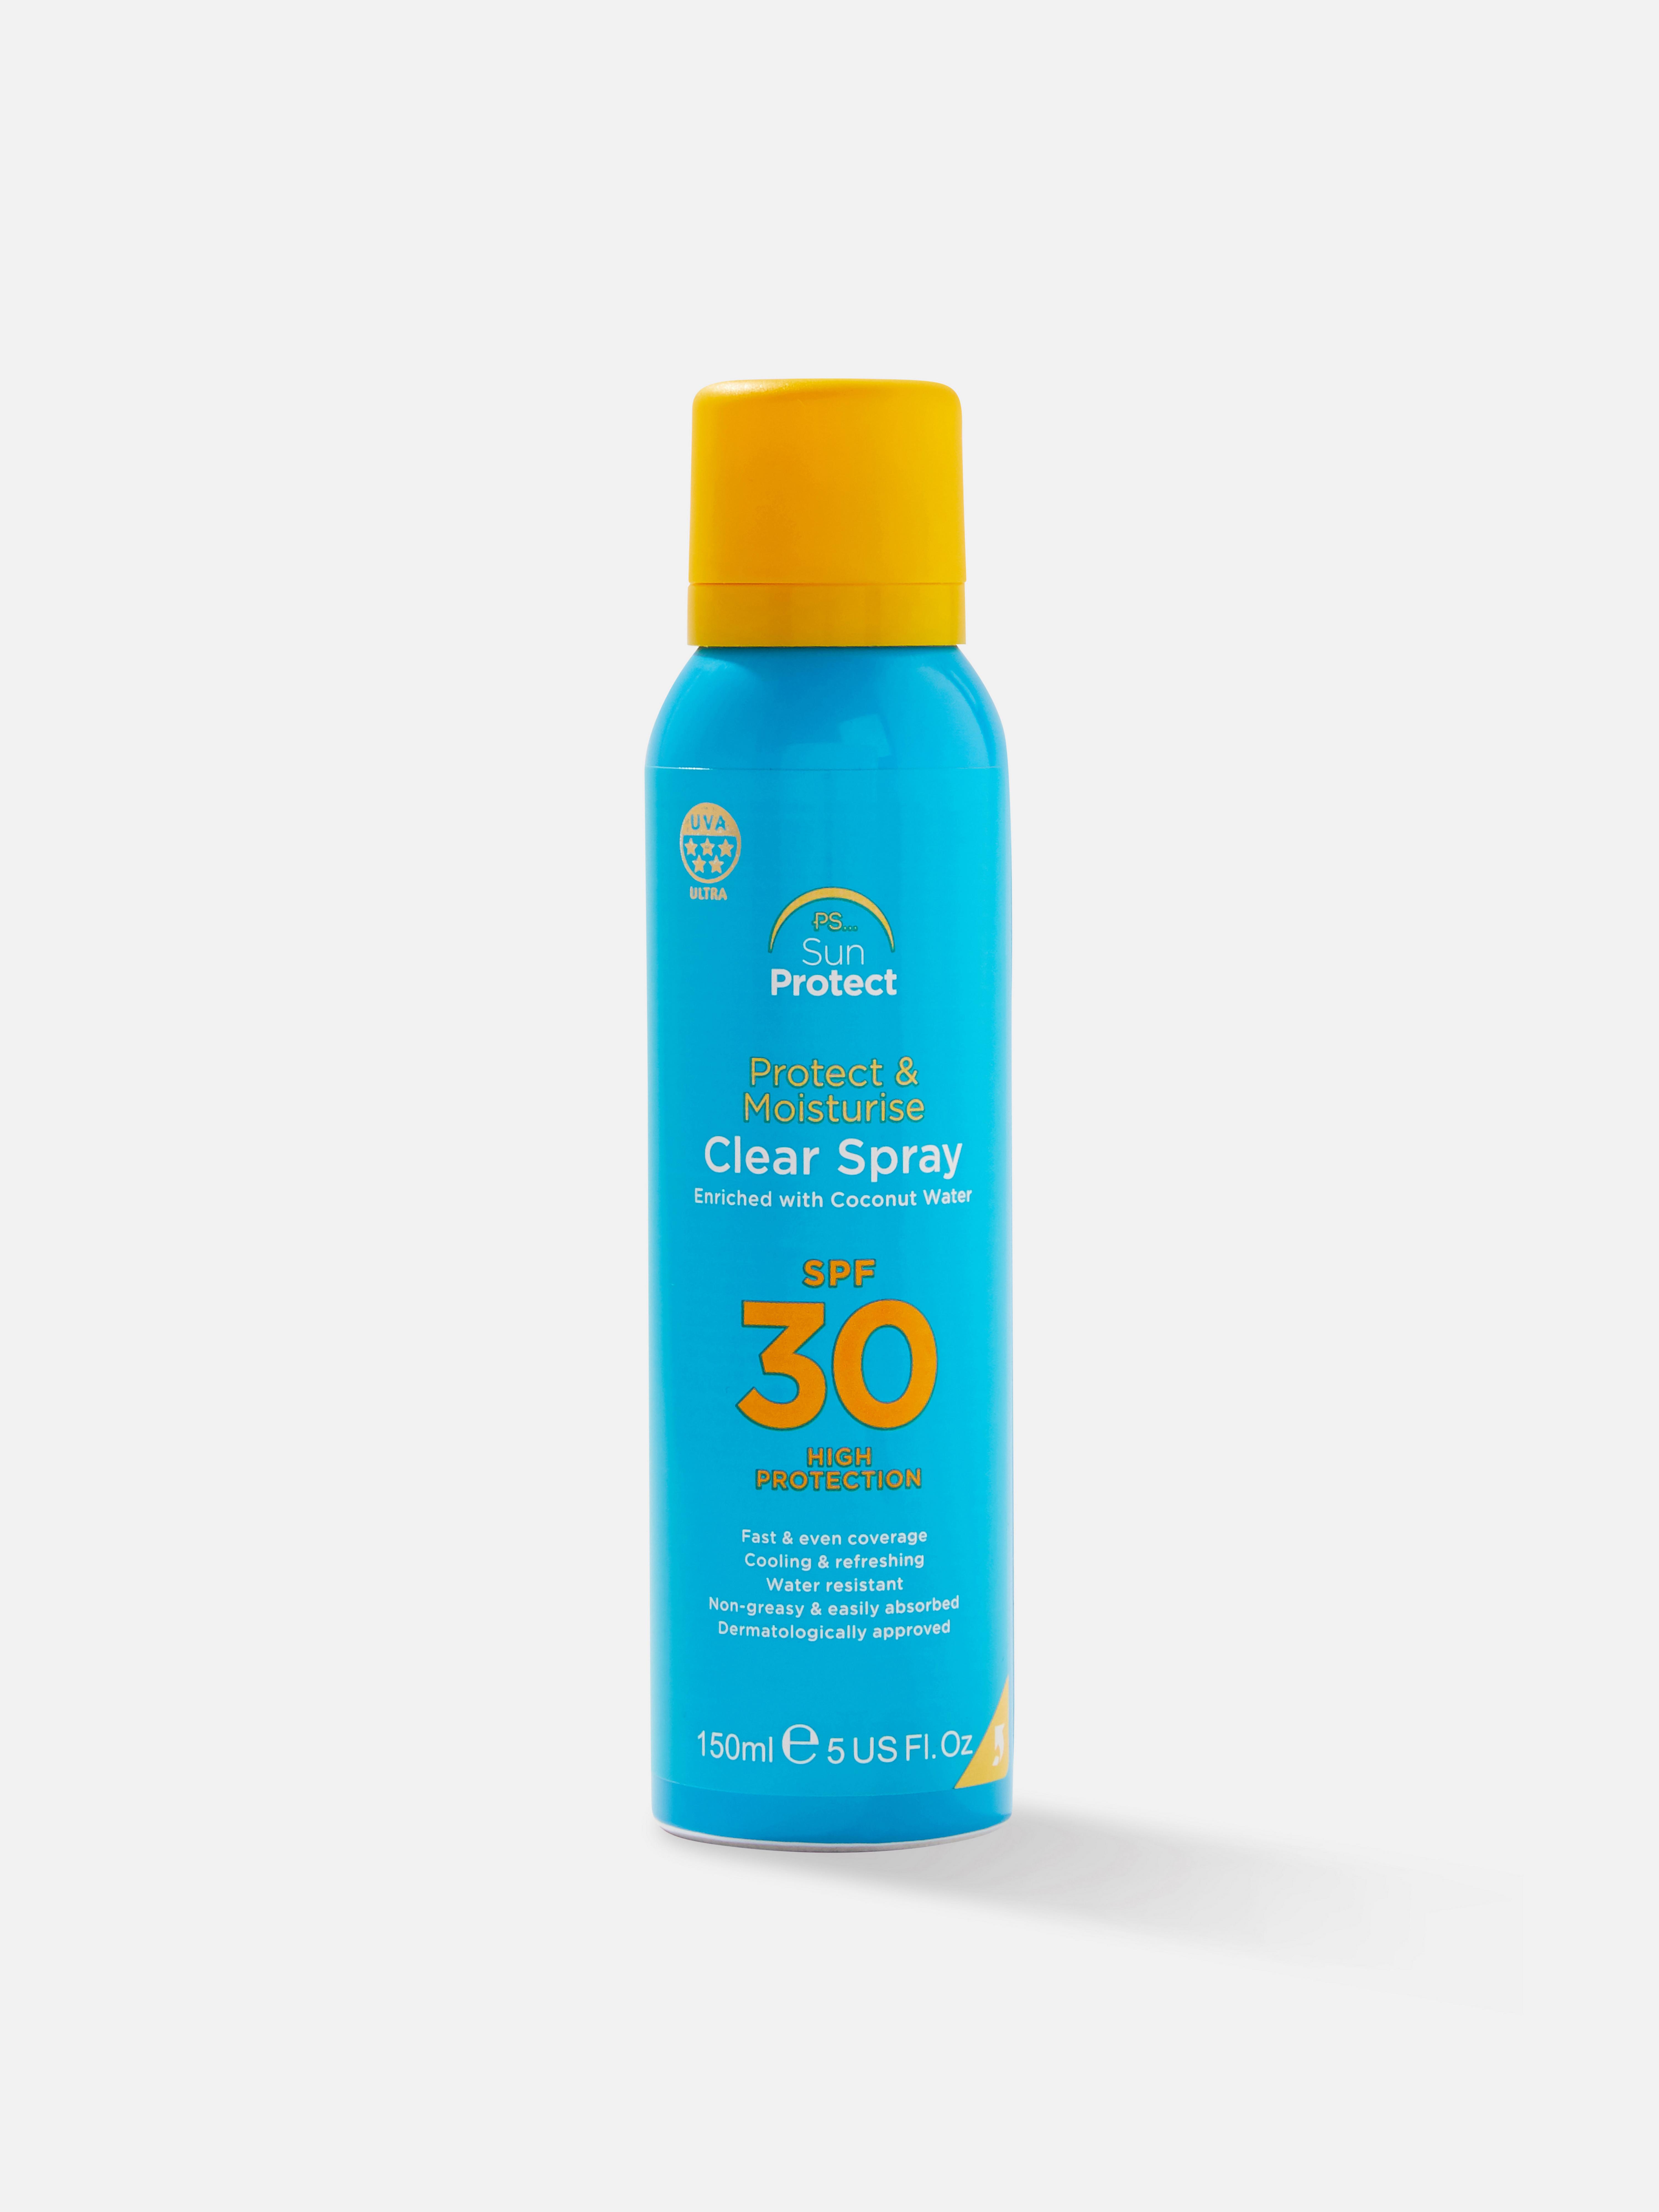 PS 30 SPF Sun Protect Spray